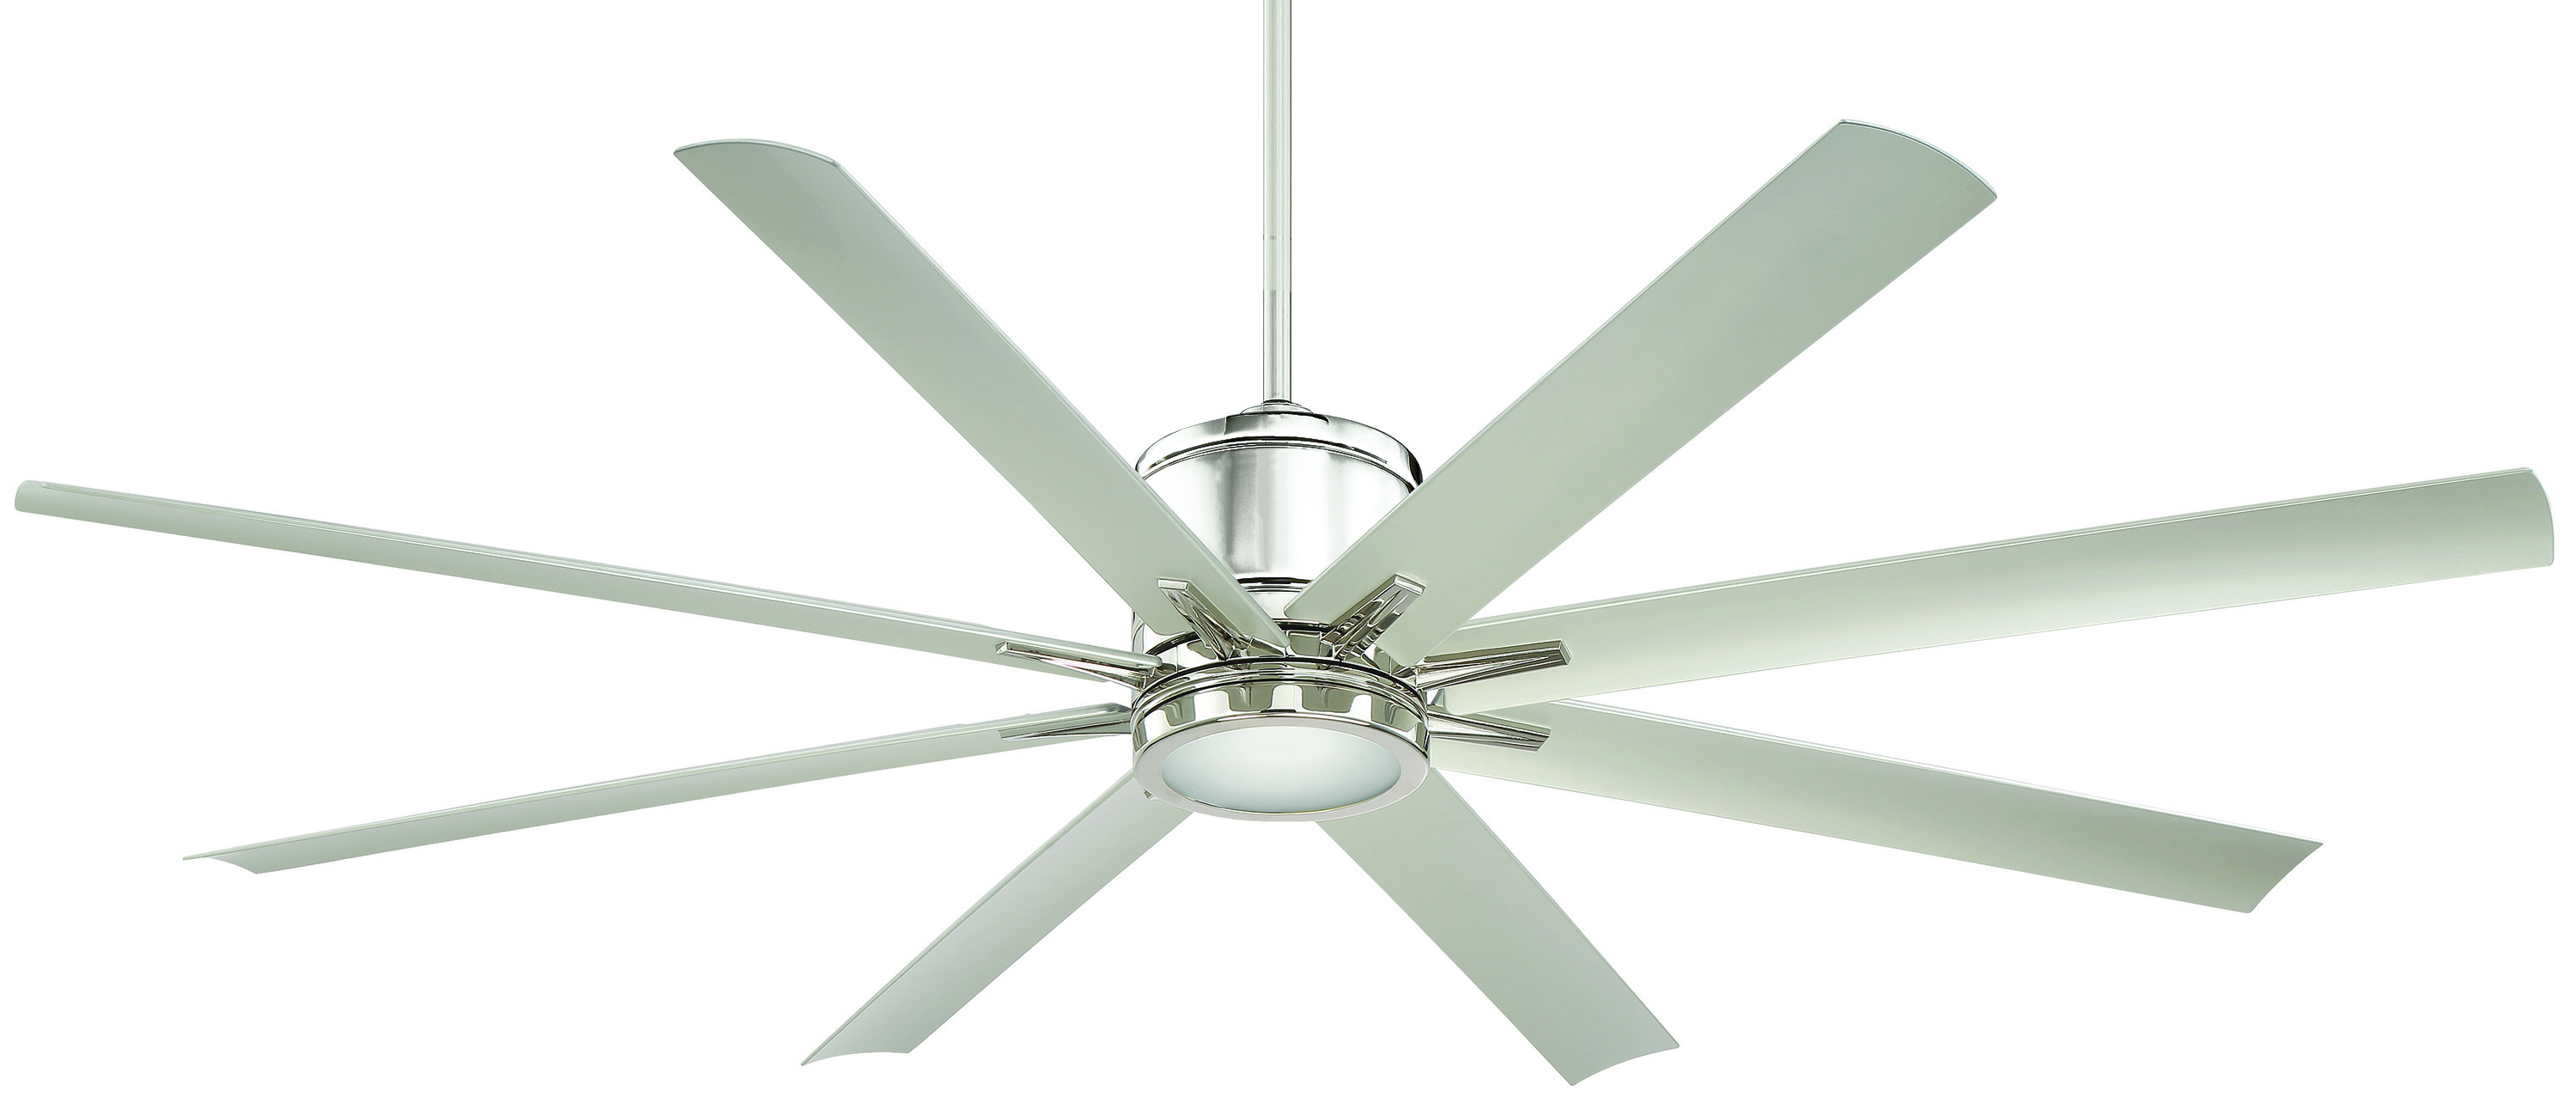 Regency Vantage ceiling fan